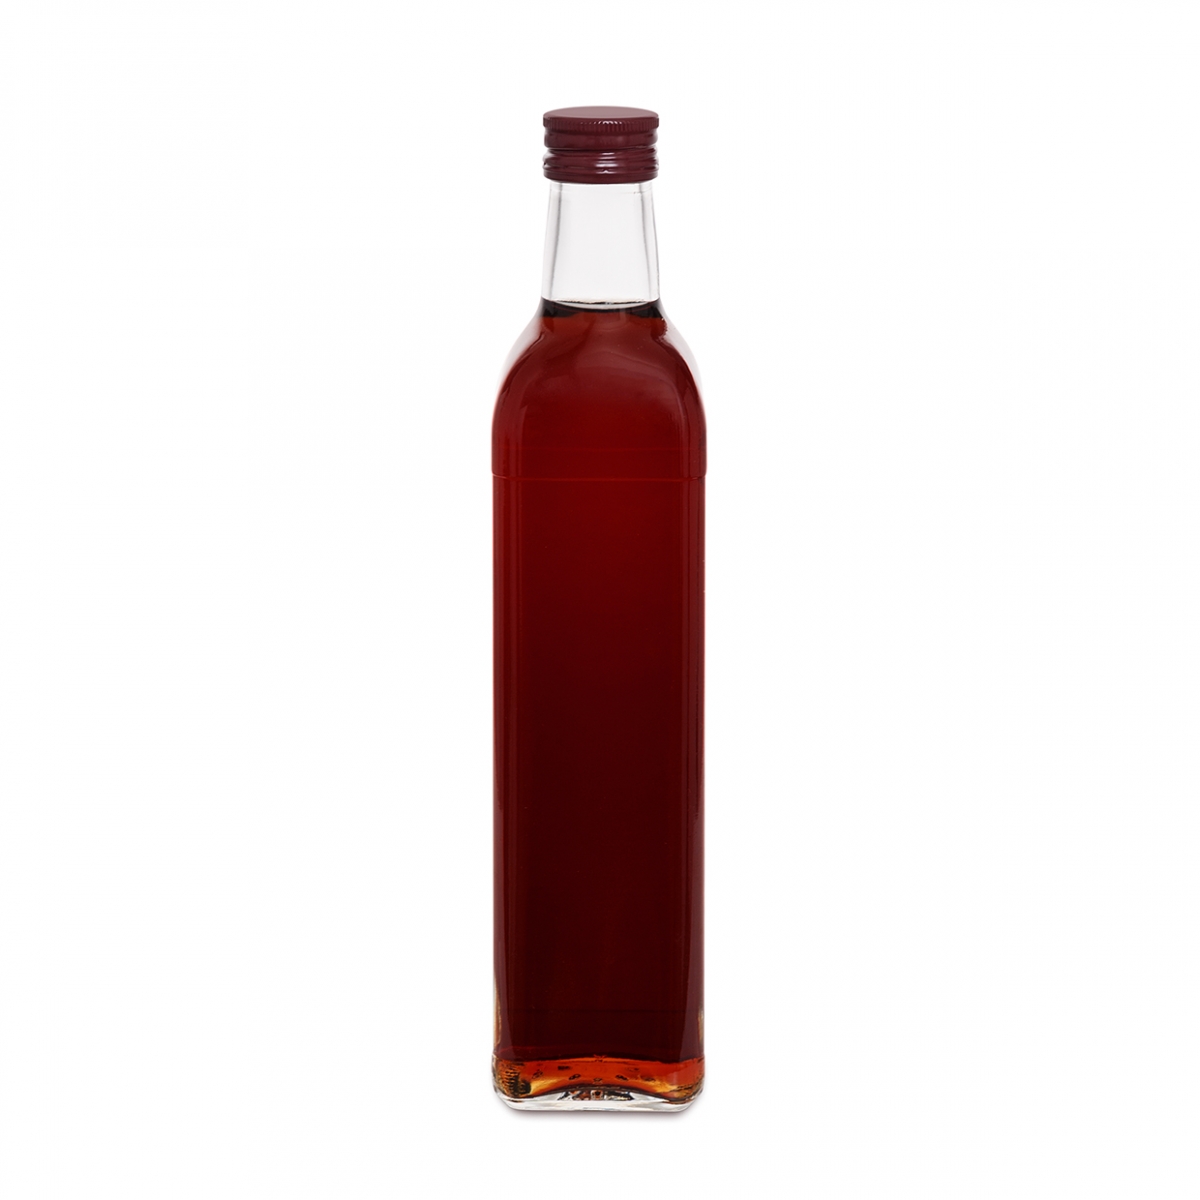 Imagen en la que se ve una botella de vinagre